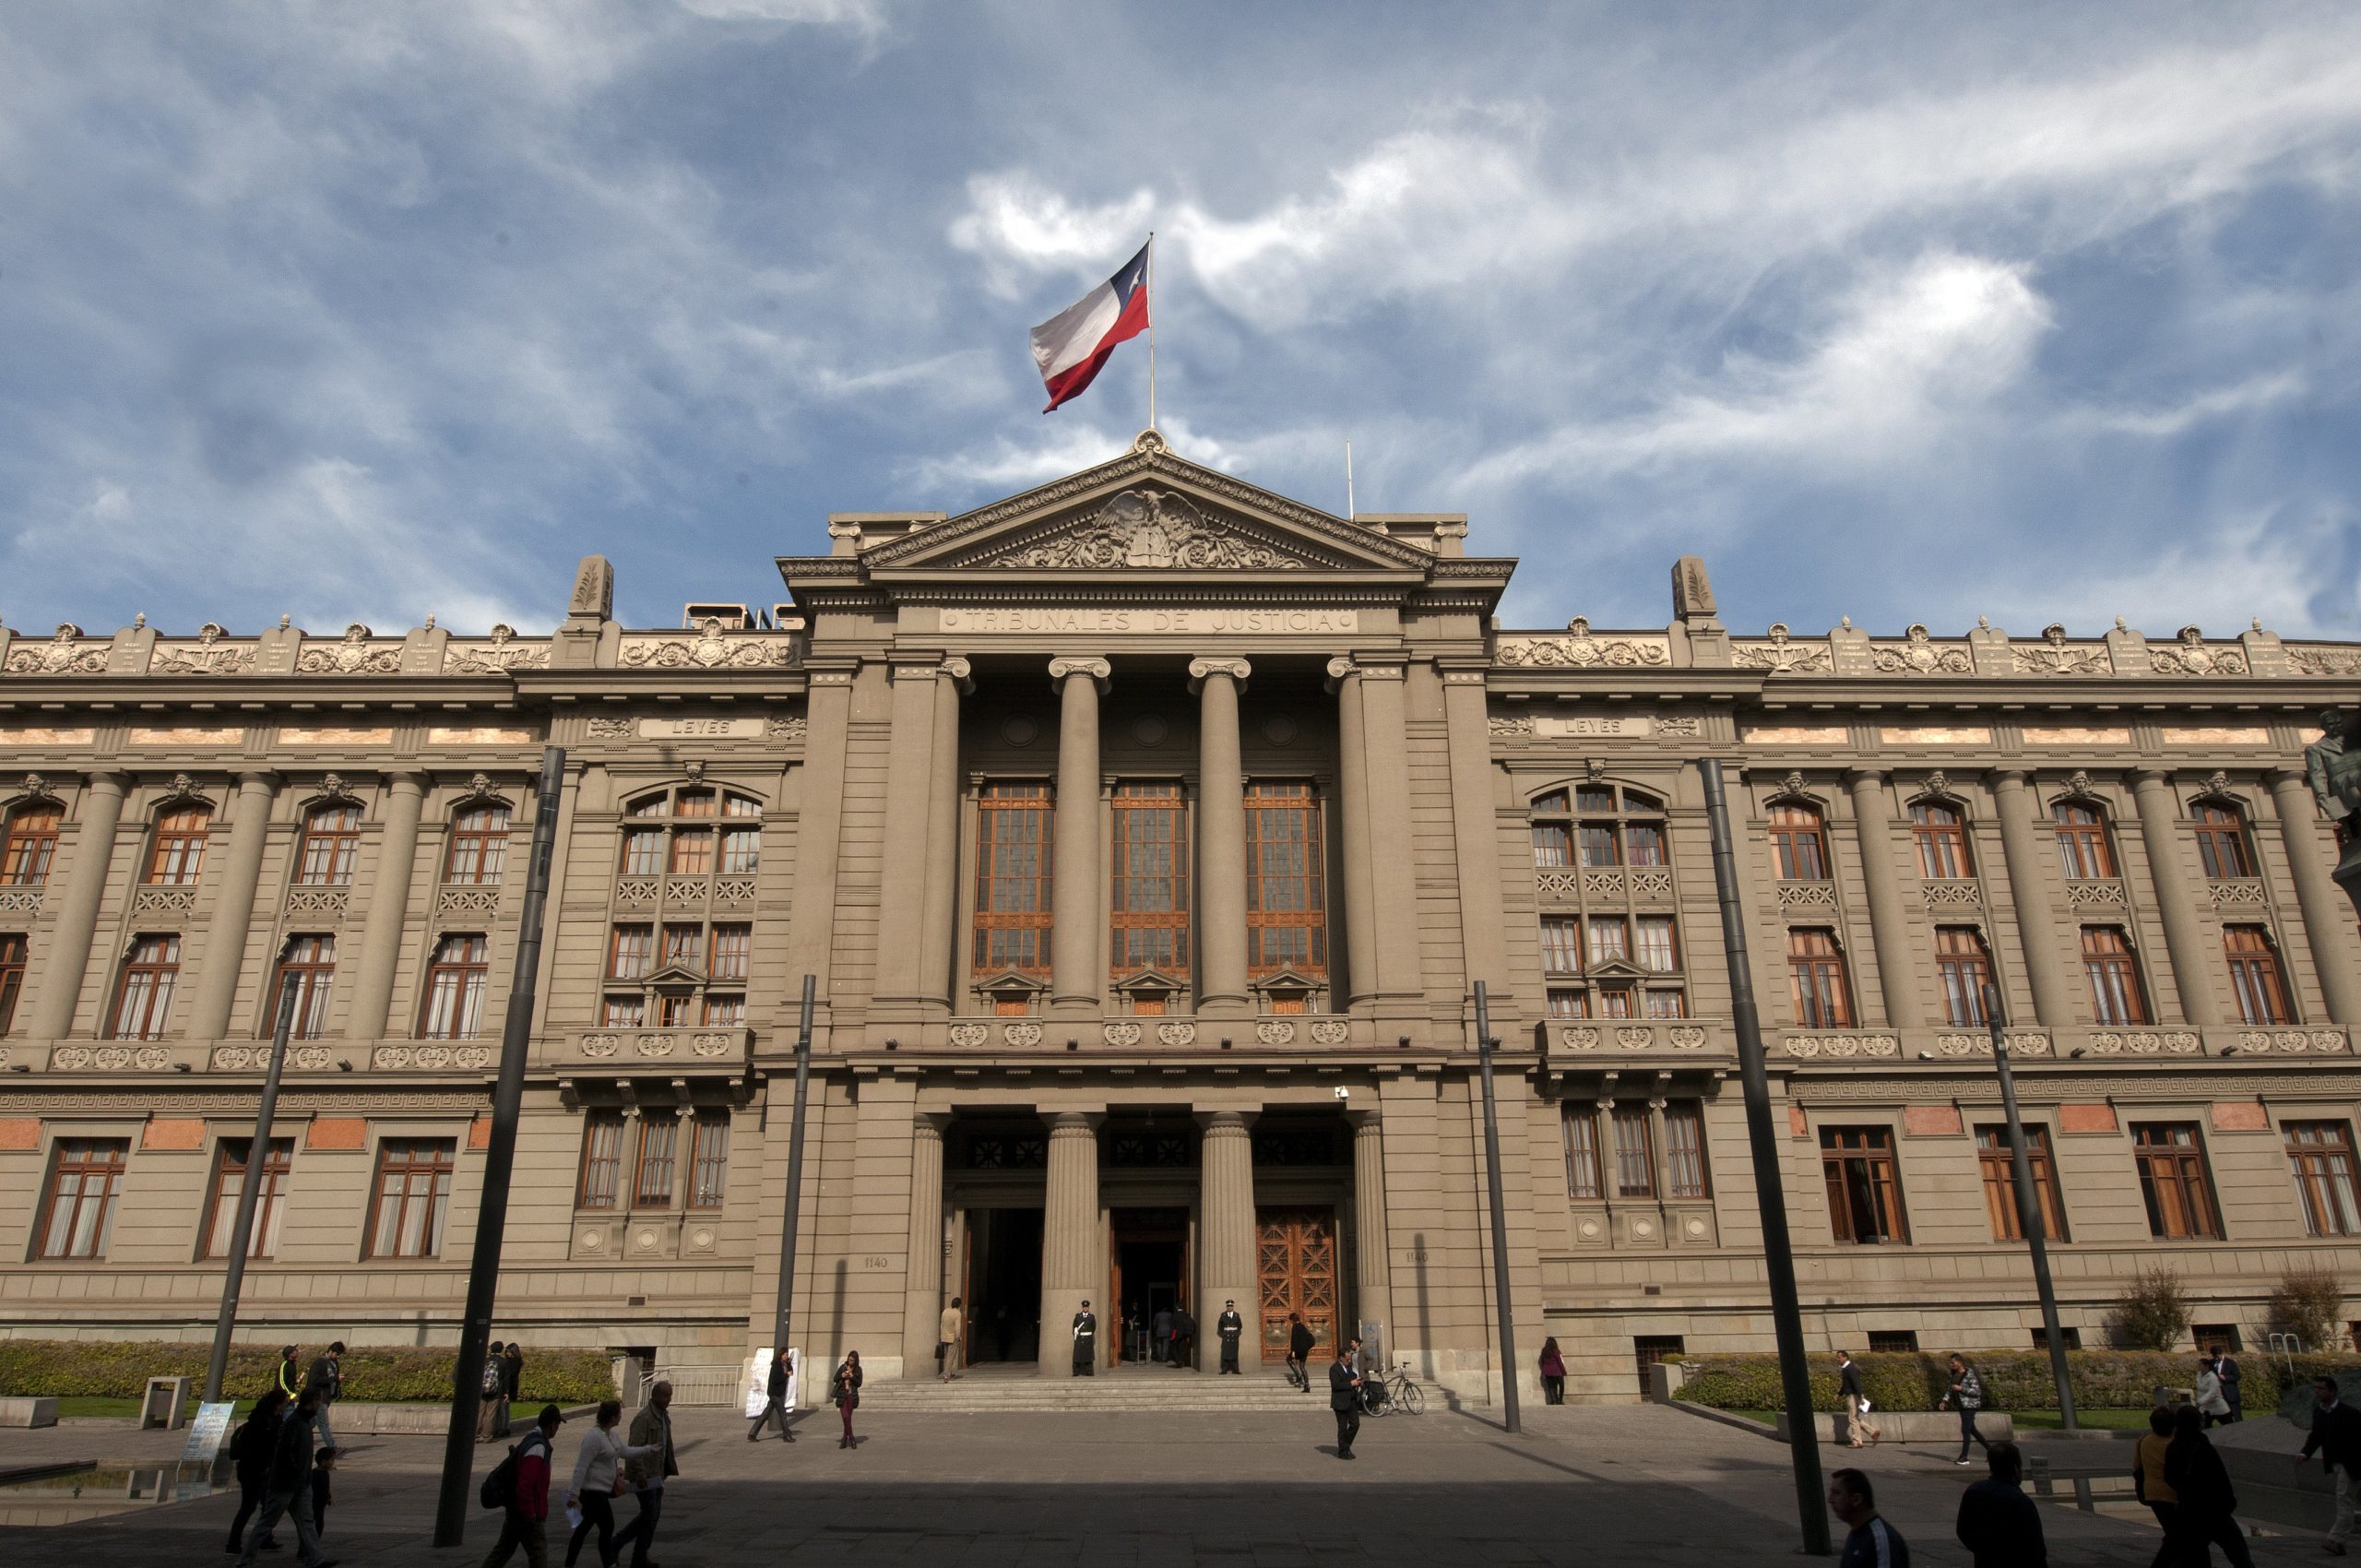 Corte Suprema condena al fisco a pagar indemnización. Fotografia del edificio de la Corte Suprema de Chile. Fotografia utilizada bajo licencia Creative Commons